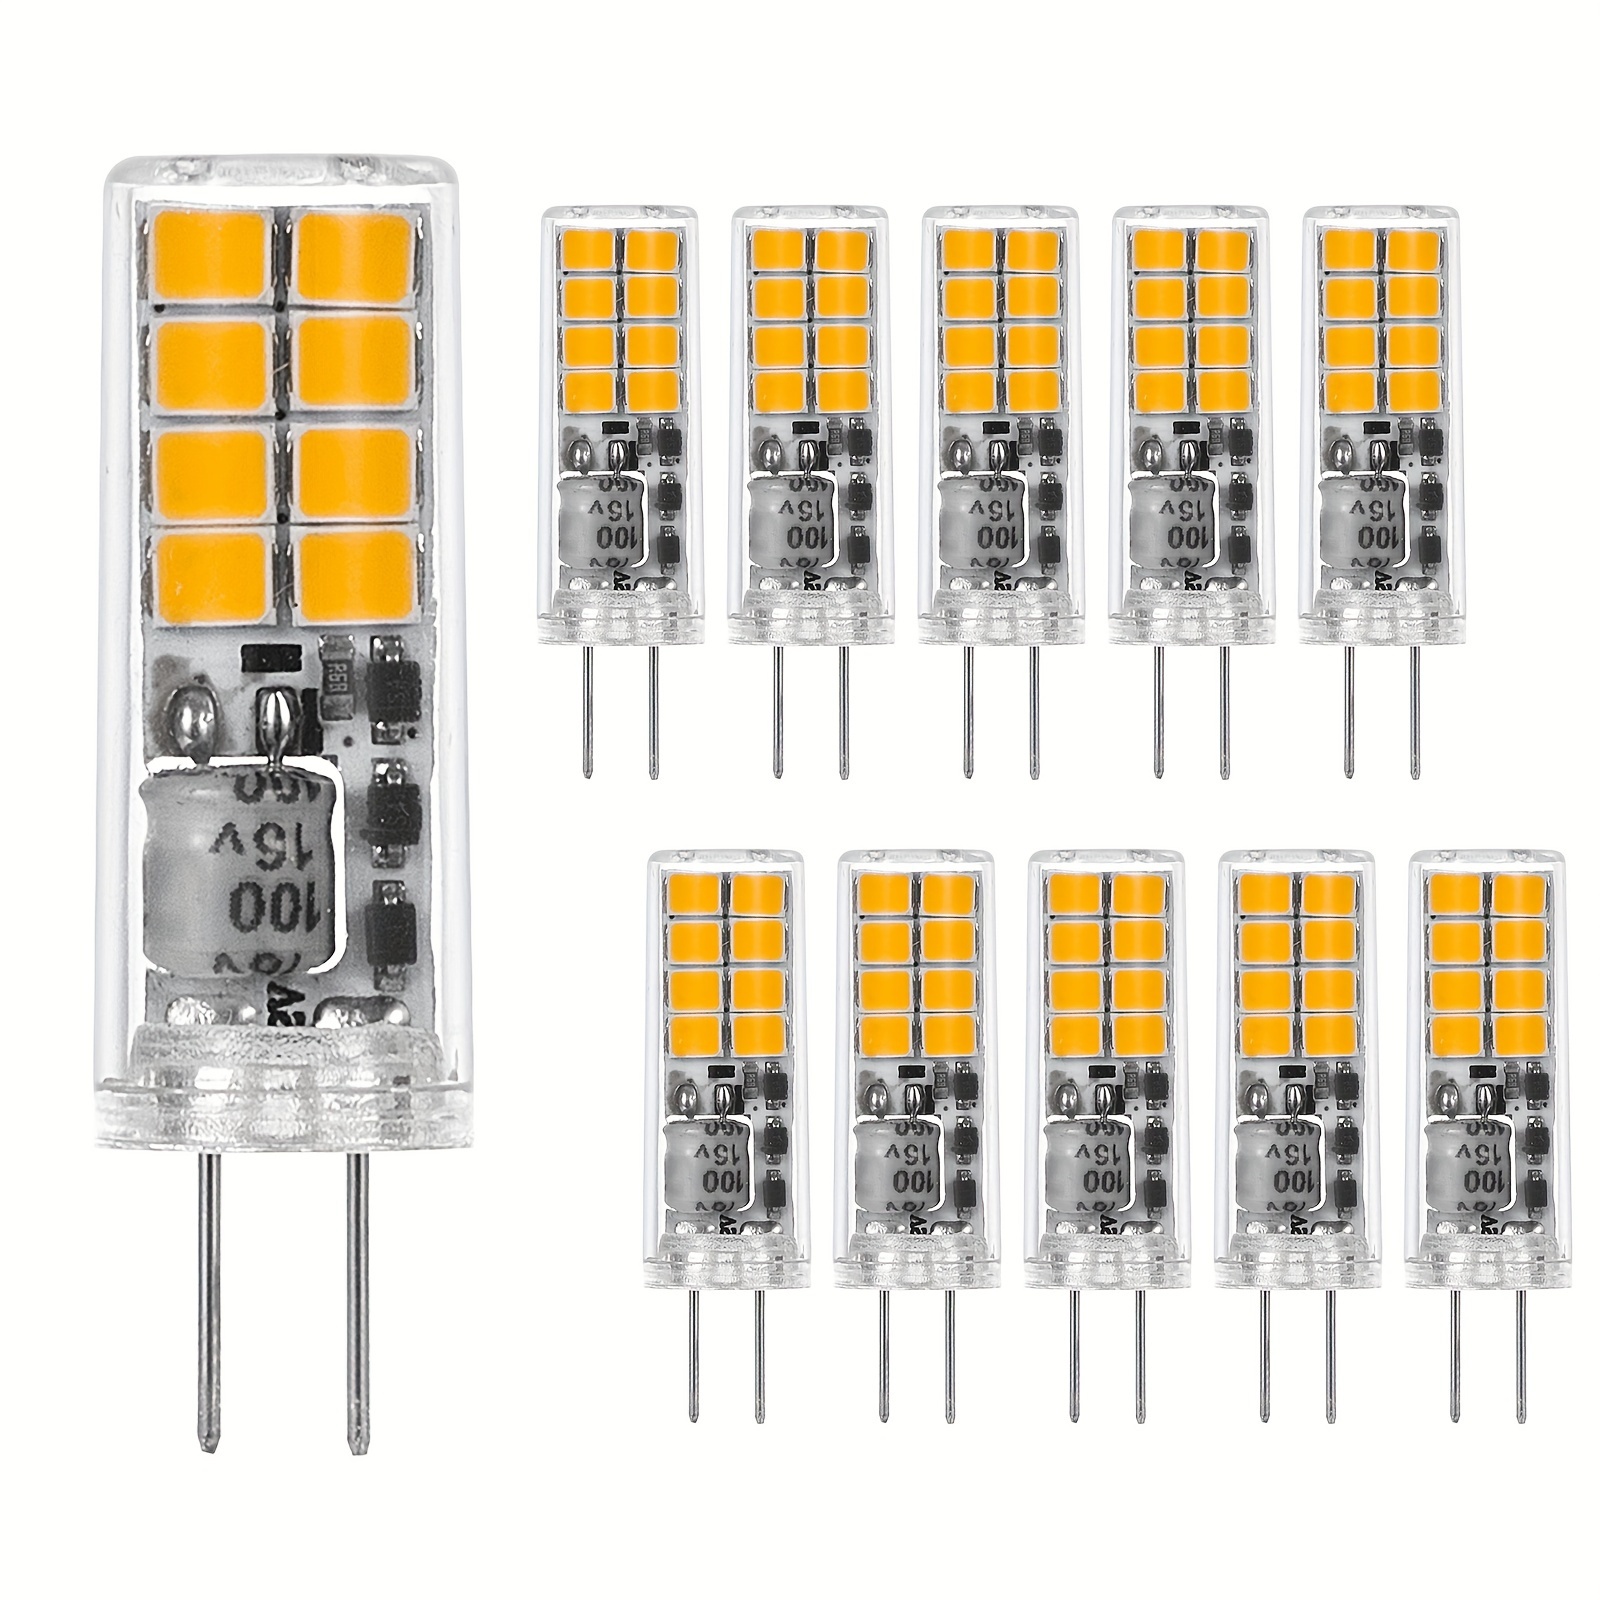 

5pcs/10pcs G4 Led G4 Bulbs Bi-pin Base Ac/dc12v Warm White 2700k/1.2w For Landscape Lighting, Pendant Lights, Under Cabinet Recessed Lamp, Home Lighting